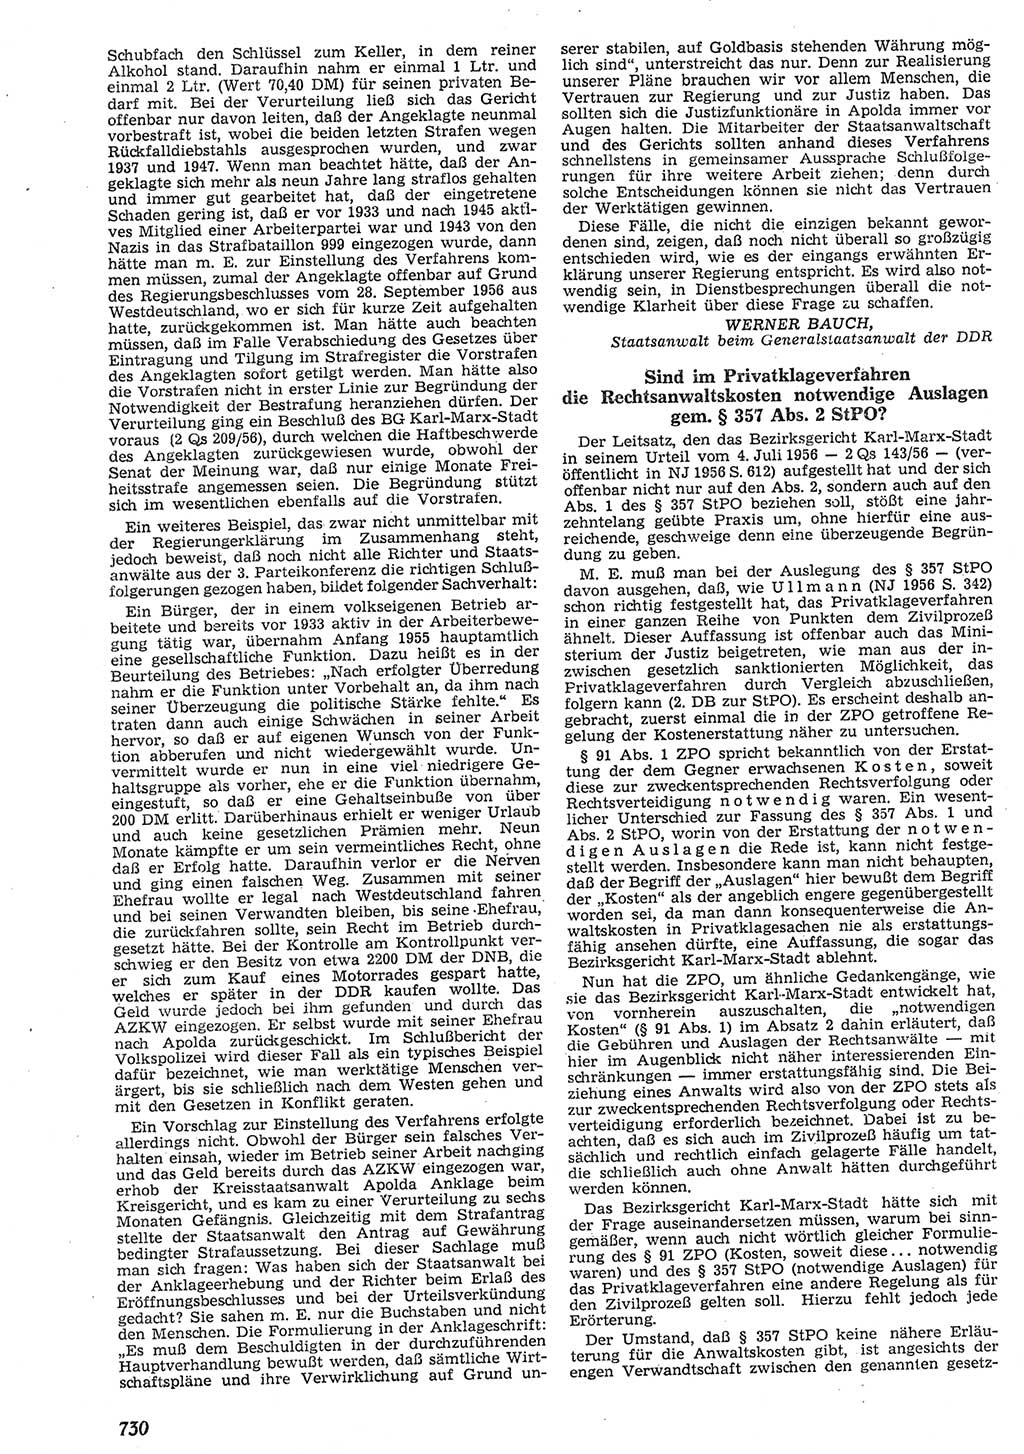 Neue Justiz (NJ), Zeitschrift für Recht und Rechtswissenschaft [Deutsche Demokratische Republik (DDR)], 10. Jahrgang 1956, Seite 730 (NJ DDR 1956, S. 730)